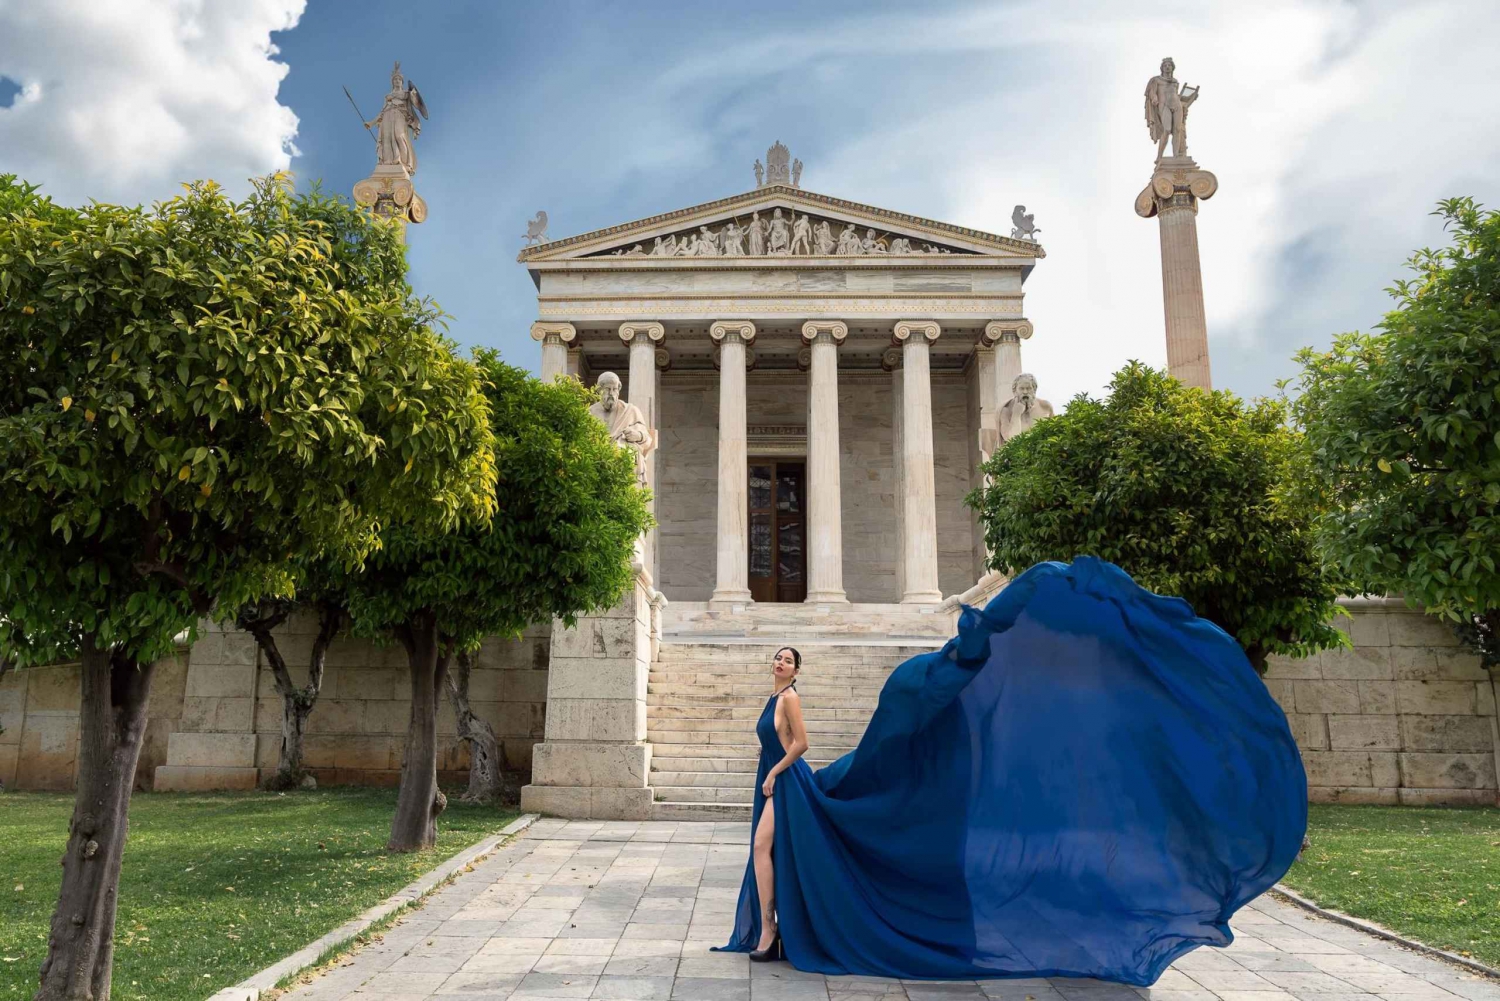 Athen: Fotoshoot med flyvende kjole 'Express-pakke'